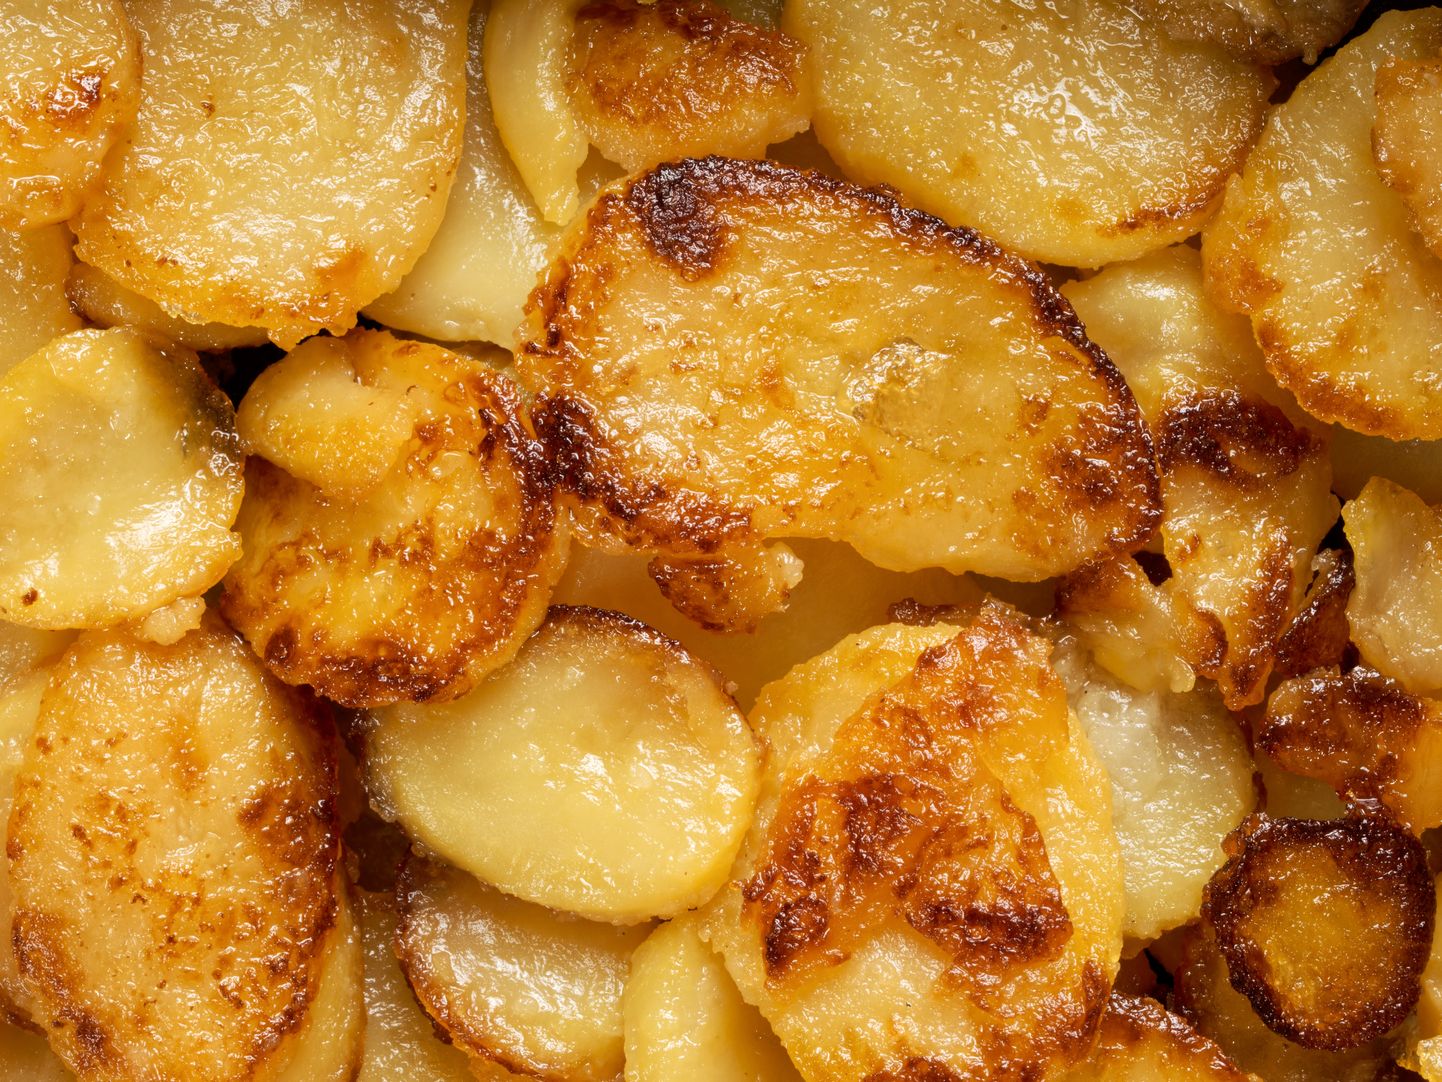 Kas kartulid teevad paksuks? Oleneb kui palju ja millisel kujul neid süüa. Õlised ahjukartulid pole just tervislik valik.